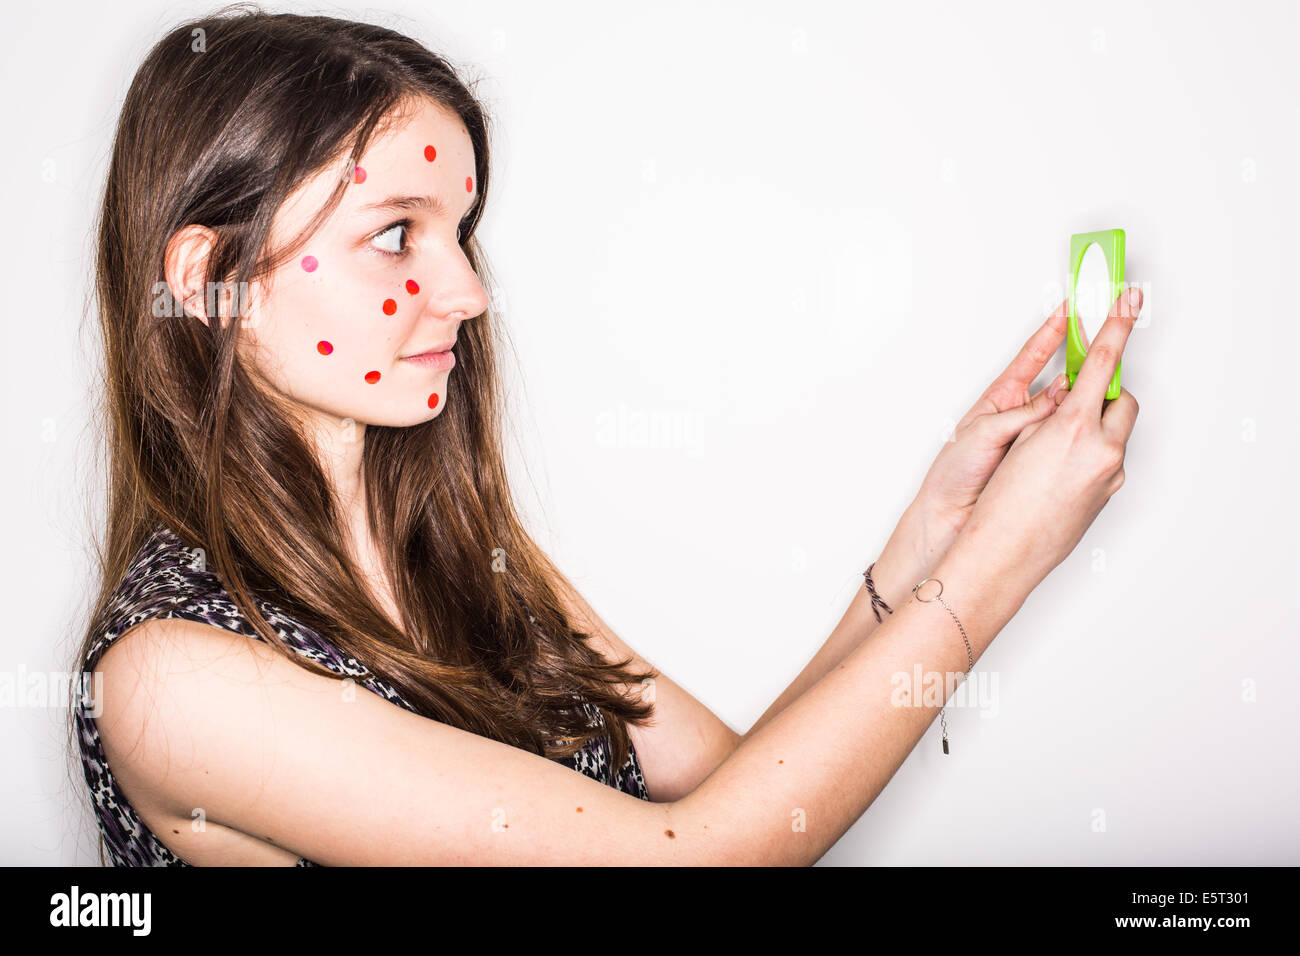 Image d'humour d'une adolescente avec des boutons sur le visage. Banque D'Images